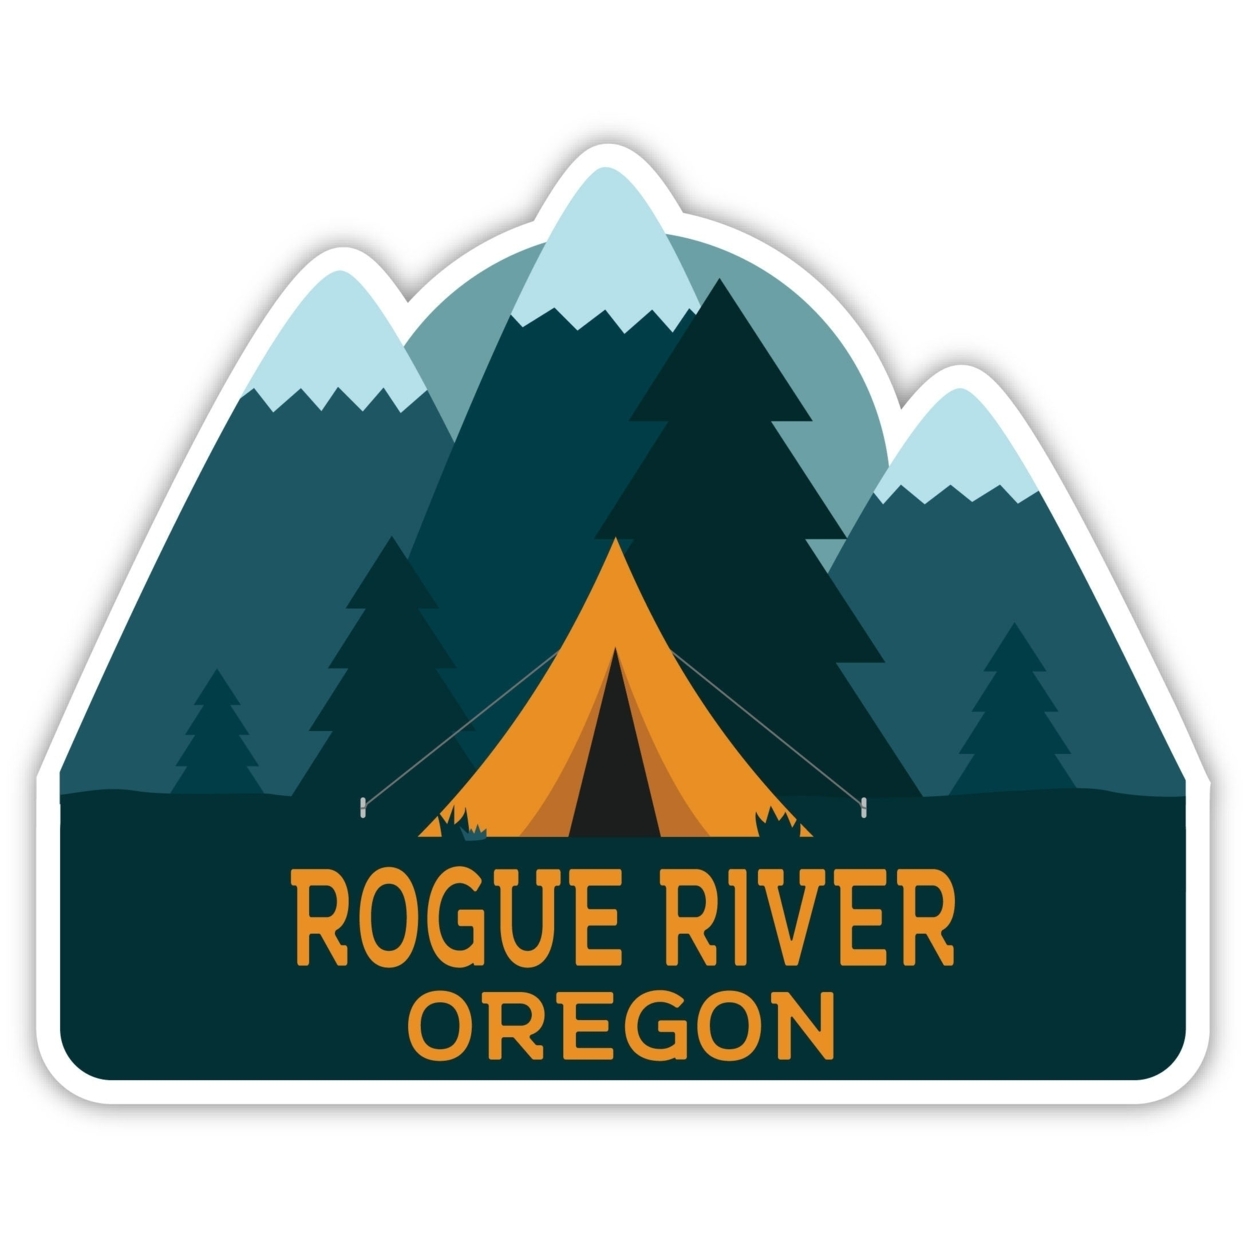 Rogue River Oregon Souvenir Decorative Stickers (Choose Theme And Size) - Single Unit, 4-Inch, Tent